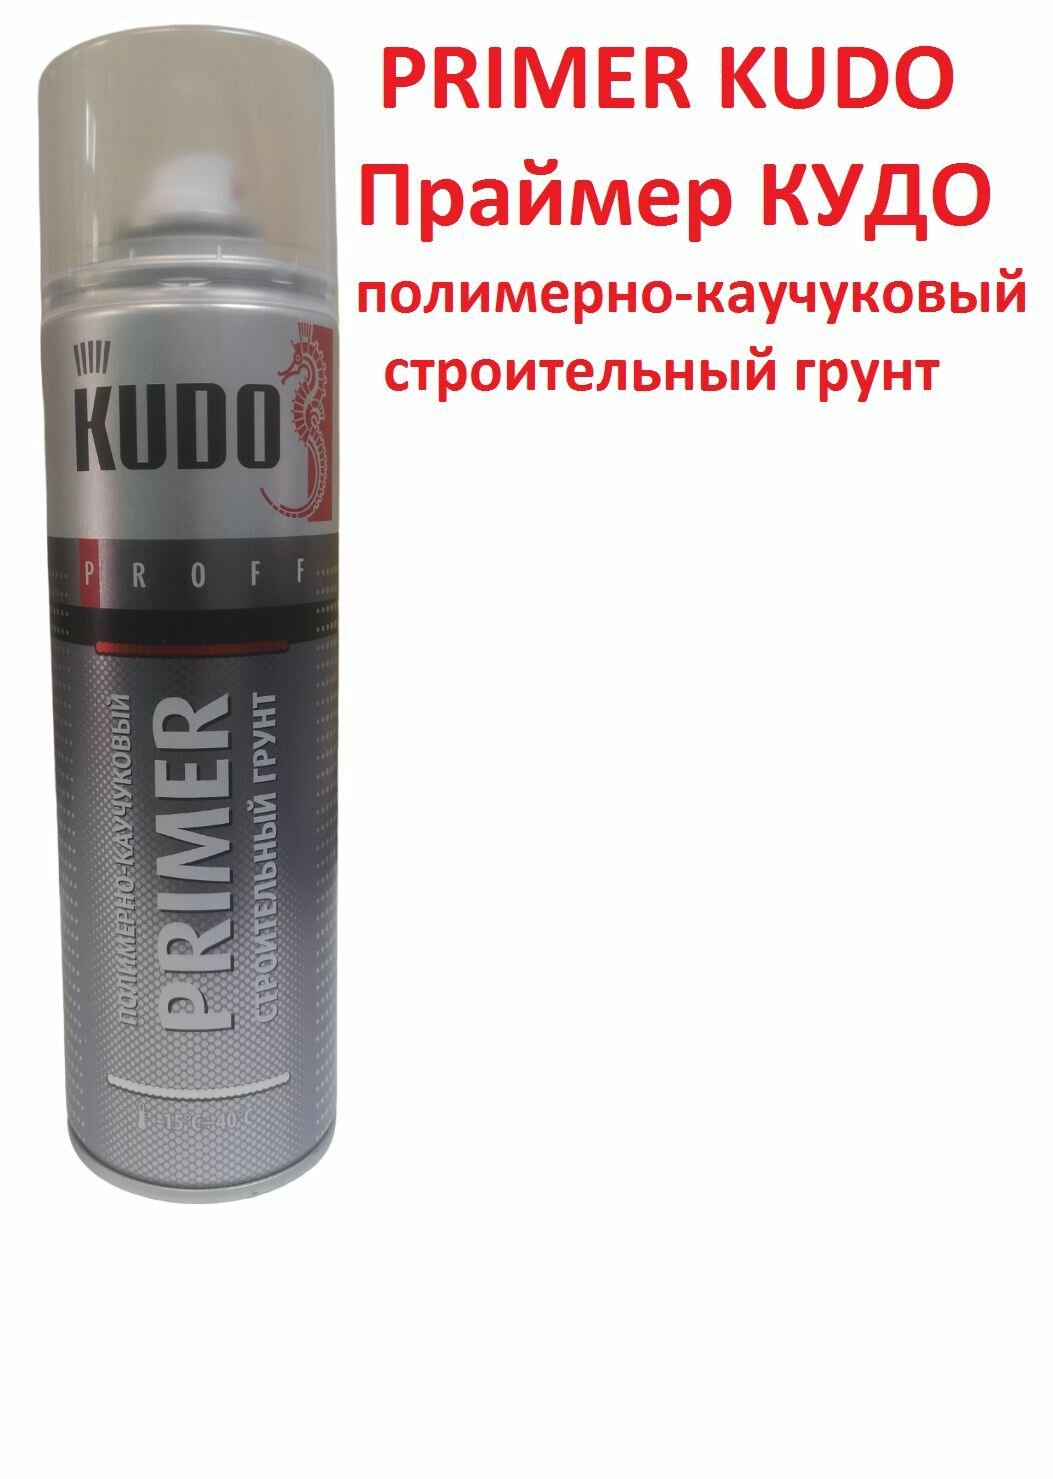 Праймер полимерно-каучуковый KUDO строительный грунт KUPP06PR